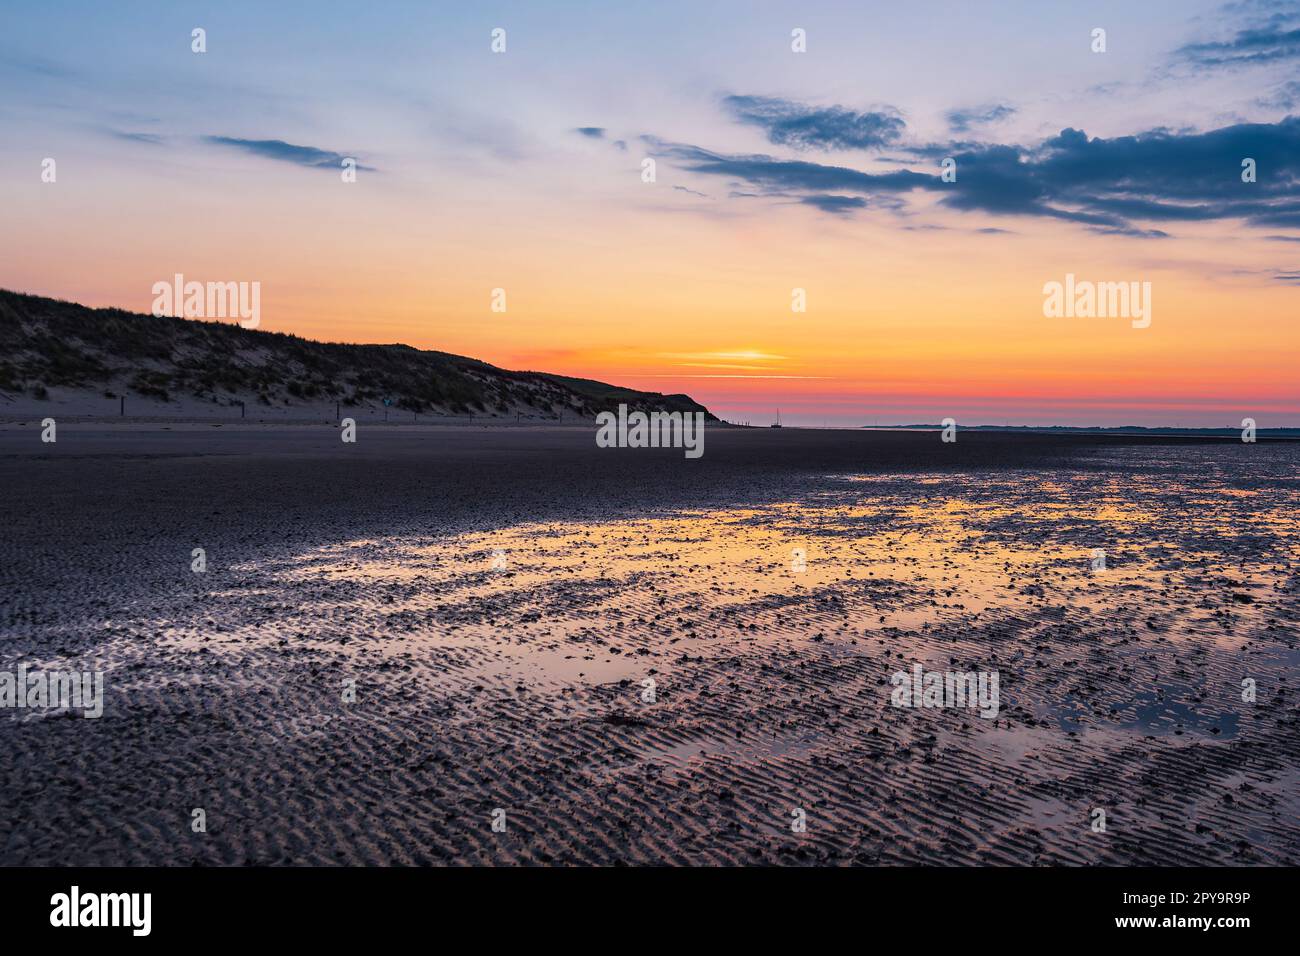 Mud flat with sunrise on the island Amrum, Germany Stock Photo